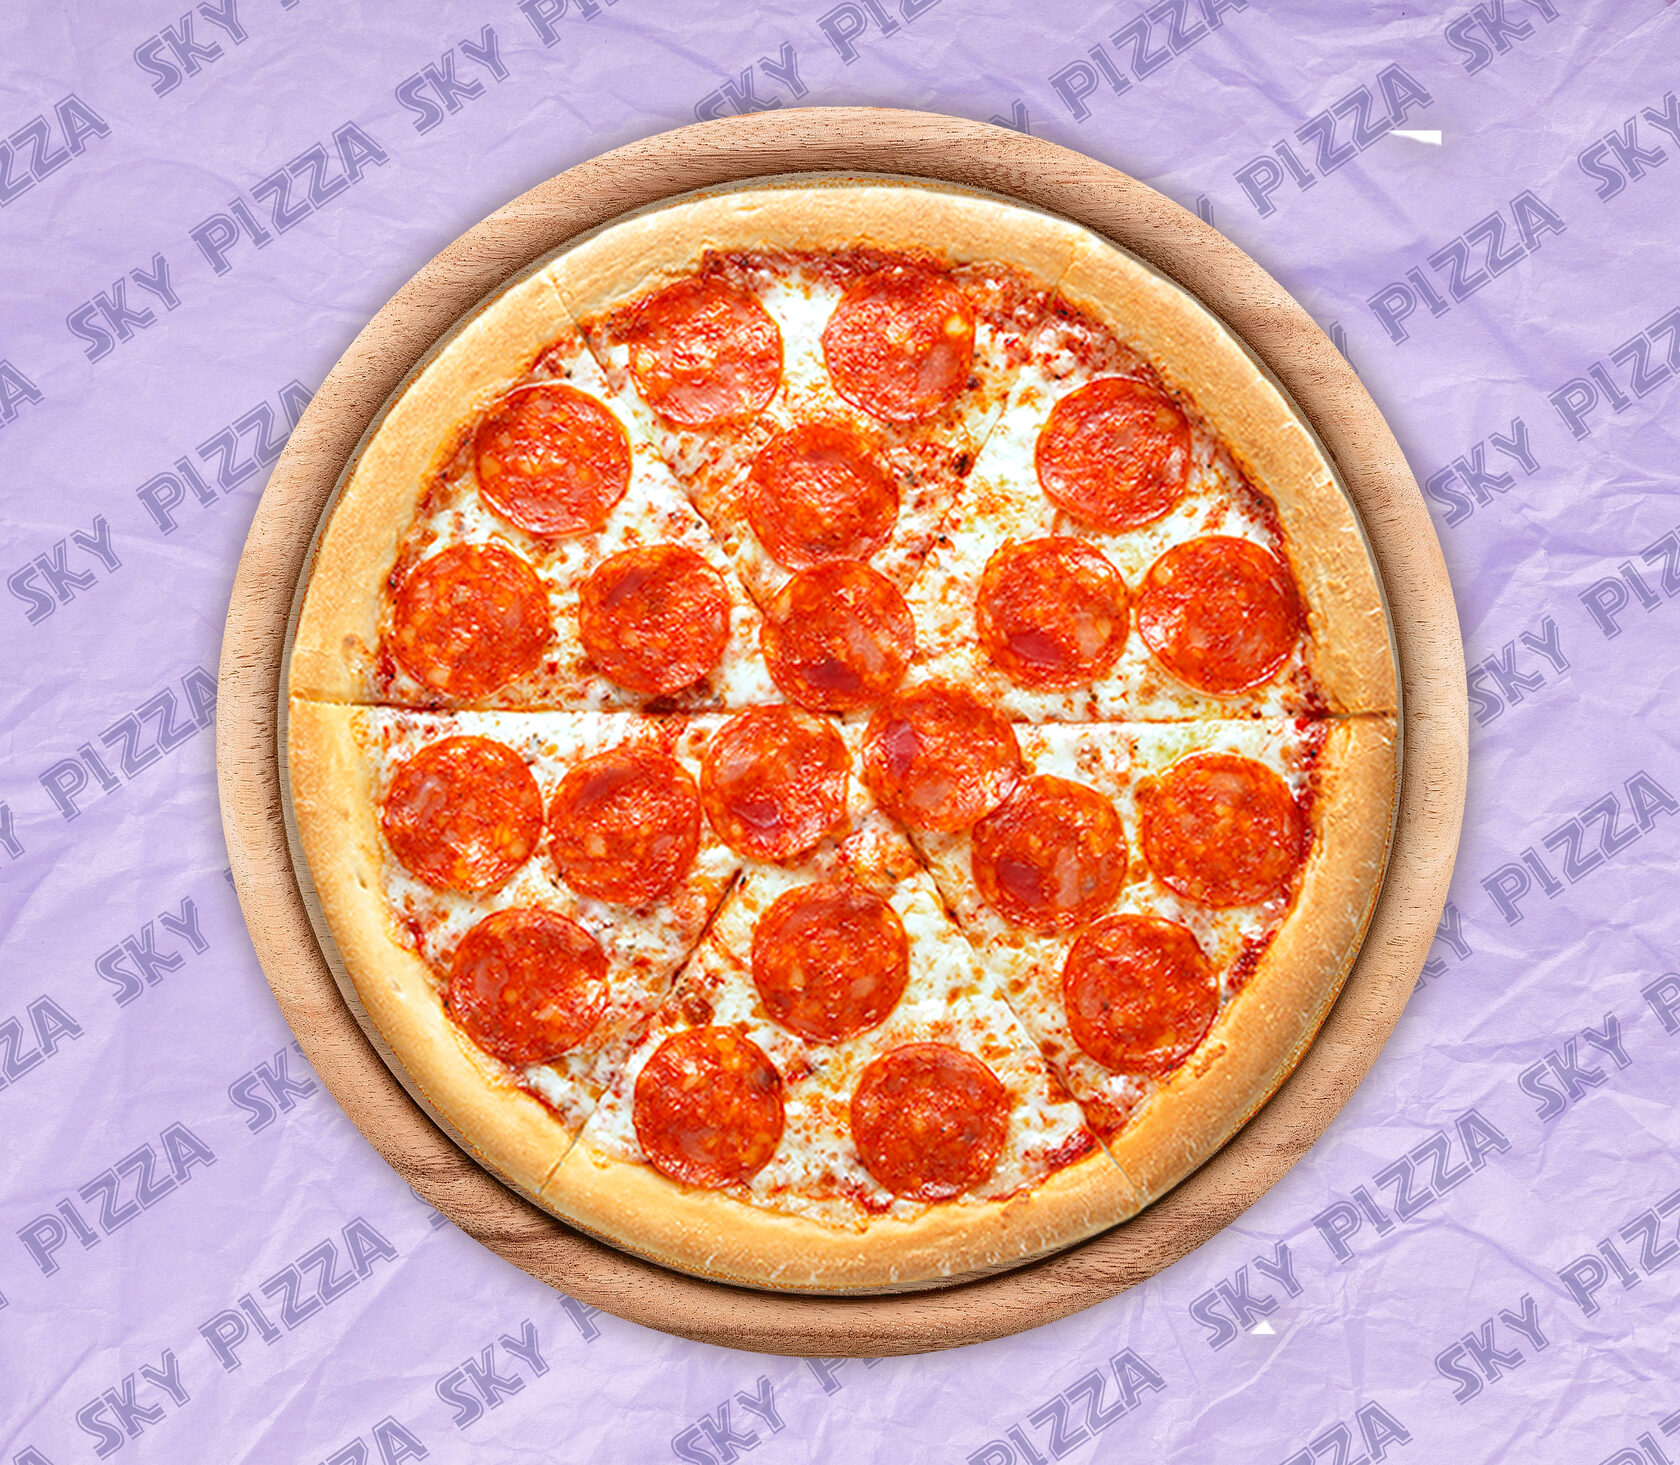 как делать пицце пепперони в домашних условиях фото 99